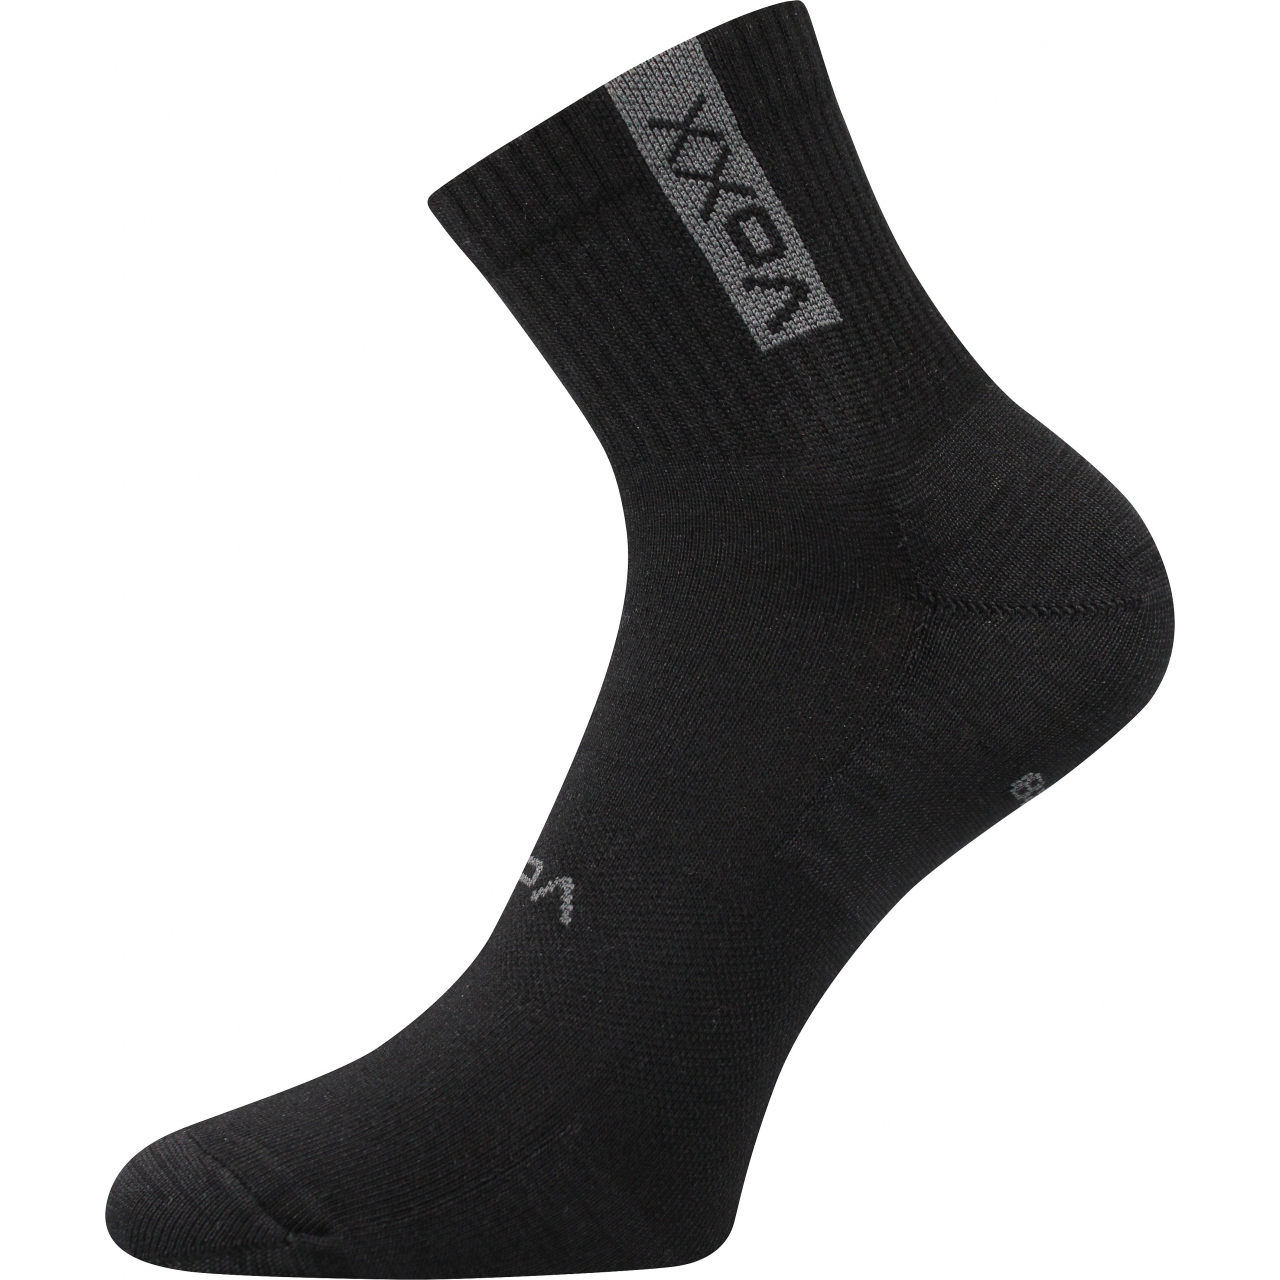 Ponožky sportovní unisex Voxx Brox - černé, 39-42